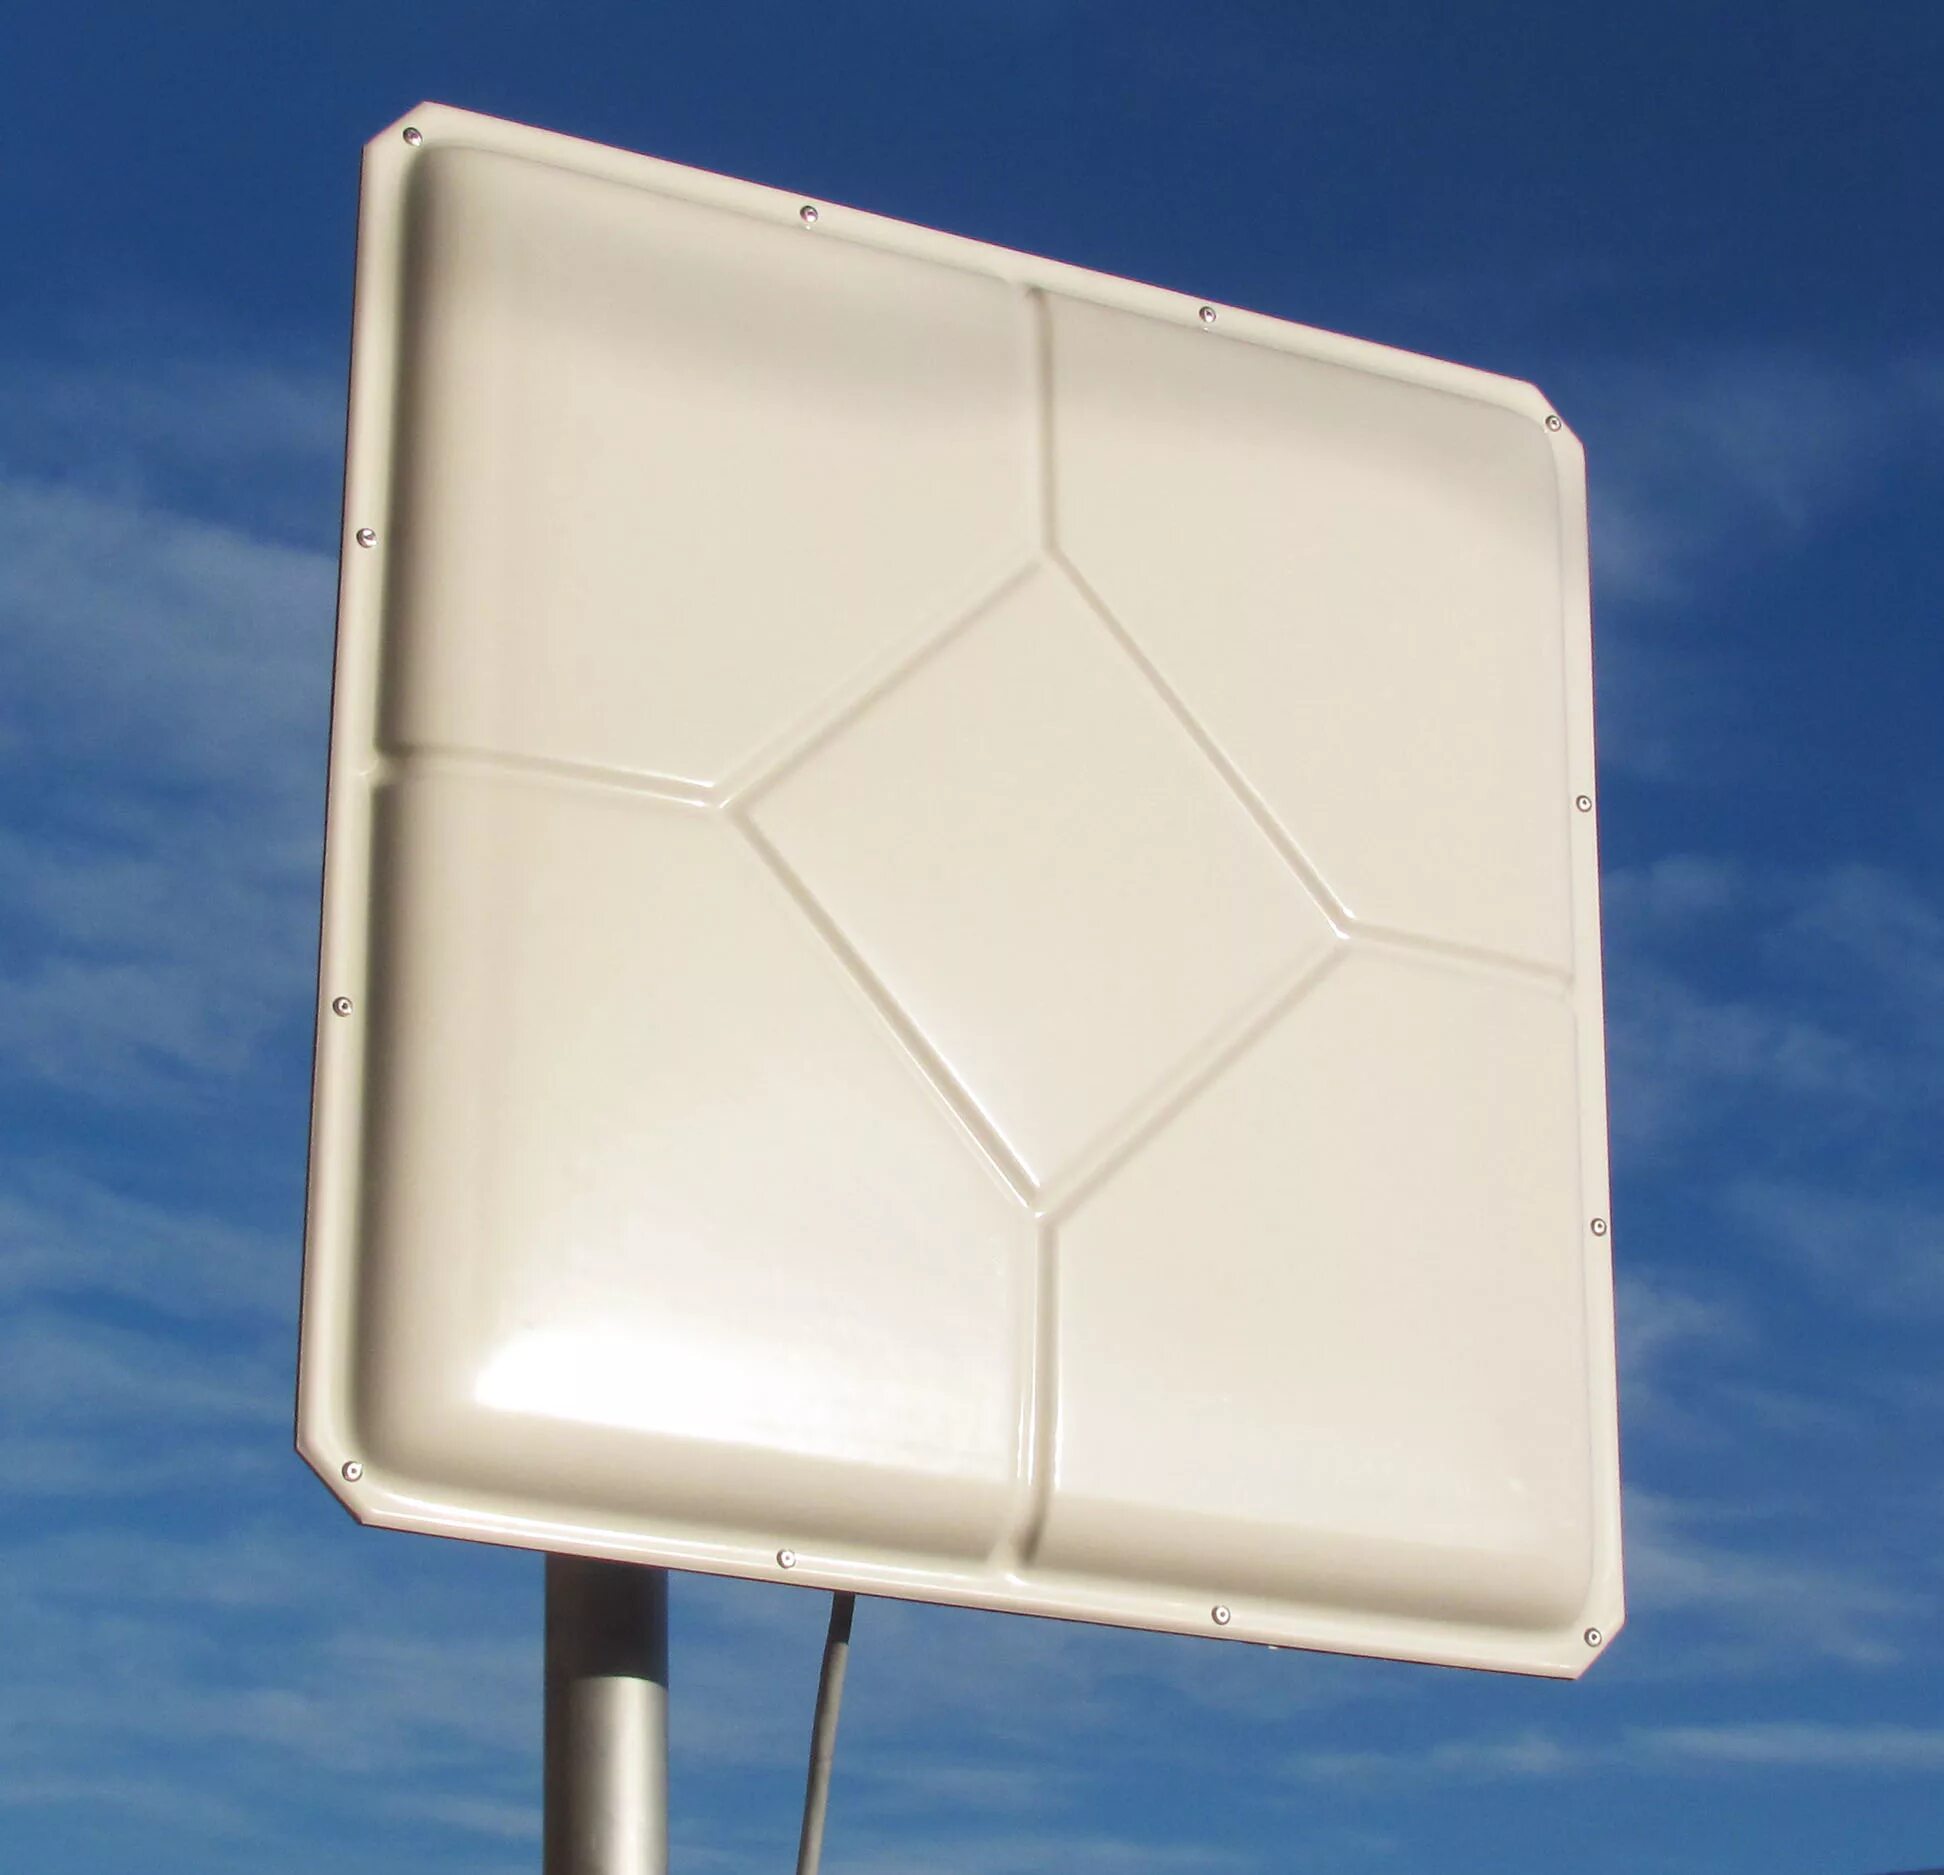 Панельная антенна. Антэкс AX-2020p панельная антенна. Антенна Антекс 2020. Антенна для 4g модема Антекс. Антенна Антэкс AX-2520p mimo/lte2600.